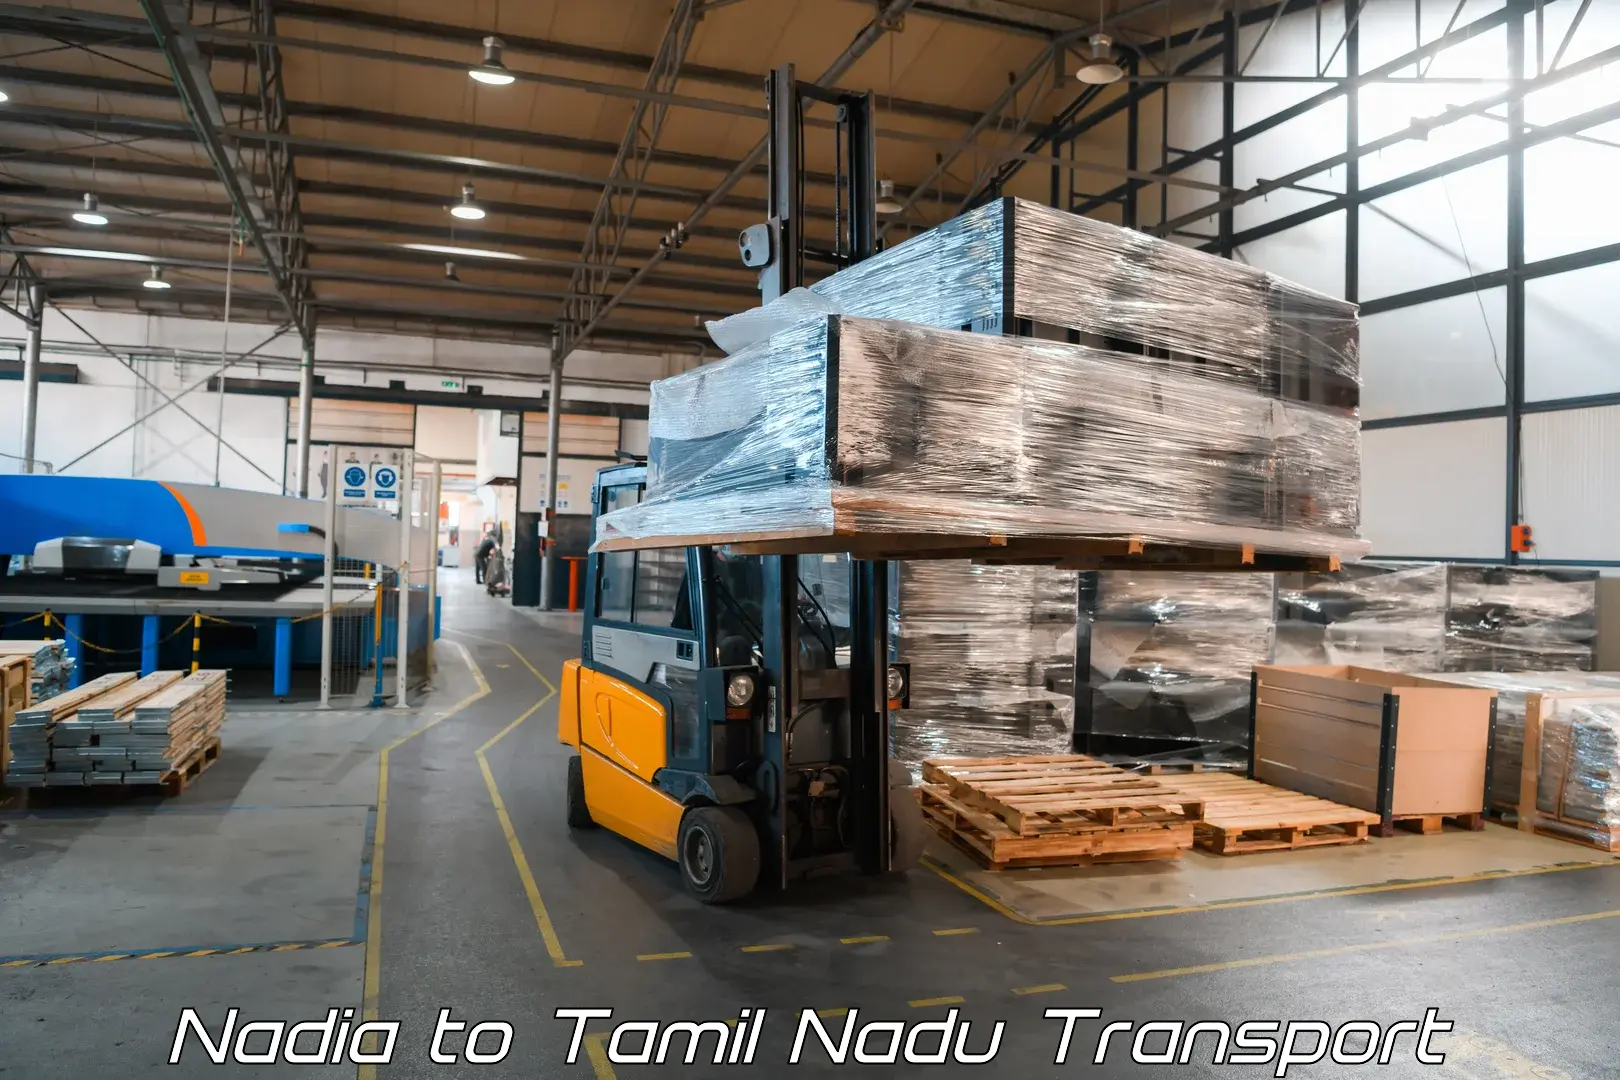 Cargo train transport services Nadia to IIIT Tiruchirappalli